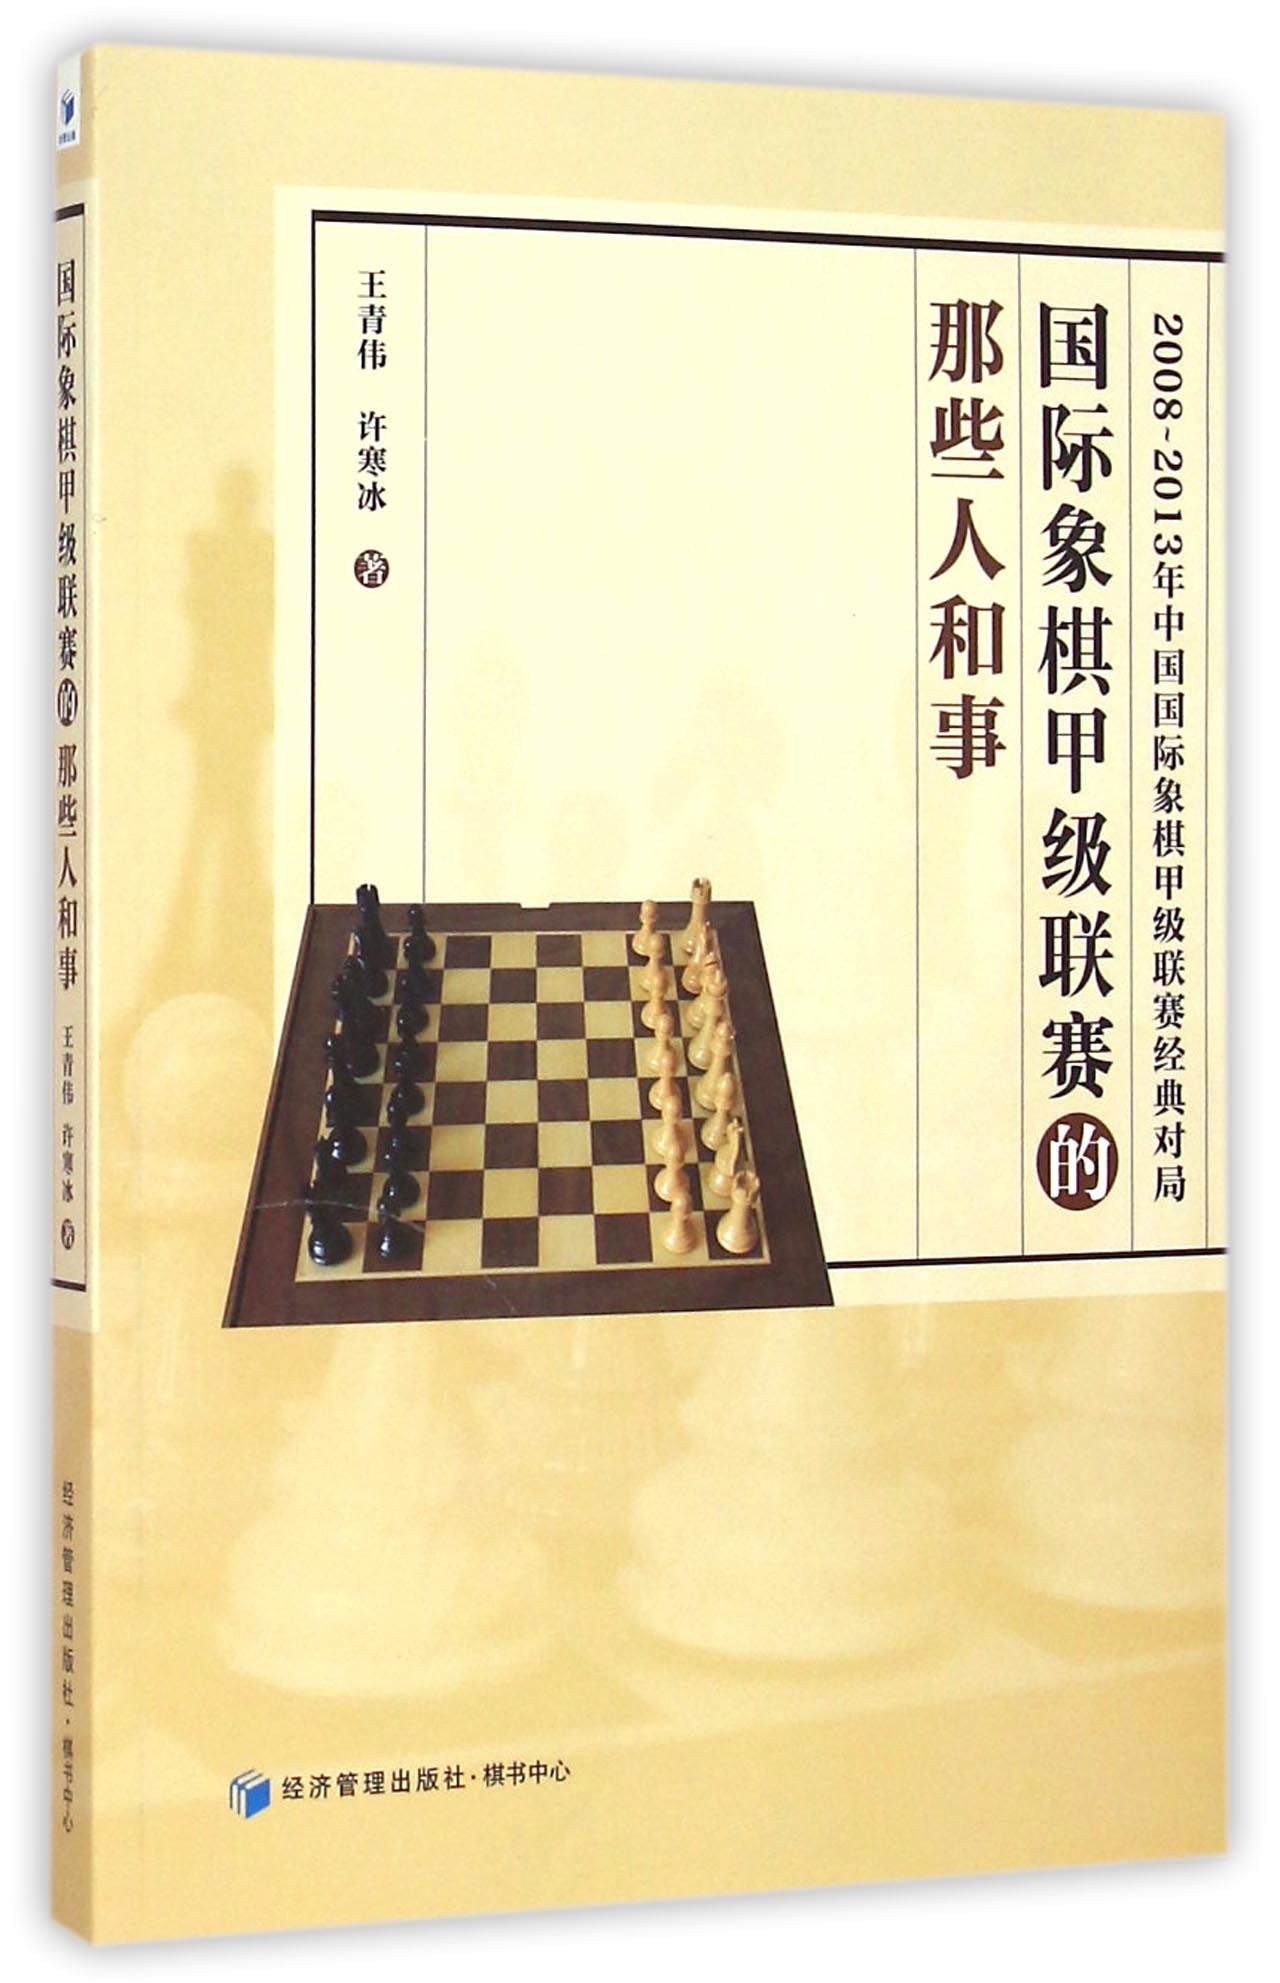 国际象棋甲级联赛的那些人和事(2008-2013年中国国际象棋甲级联赛经典对局)